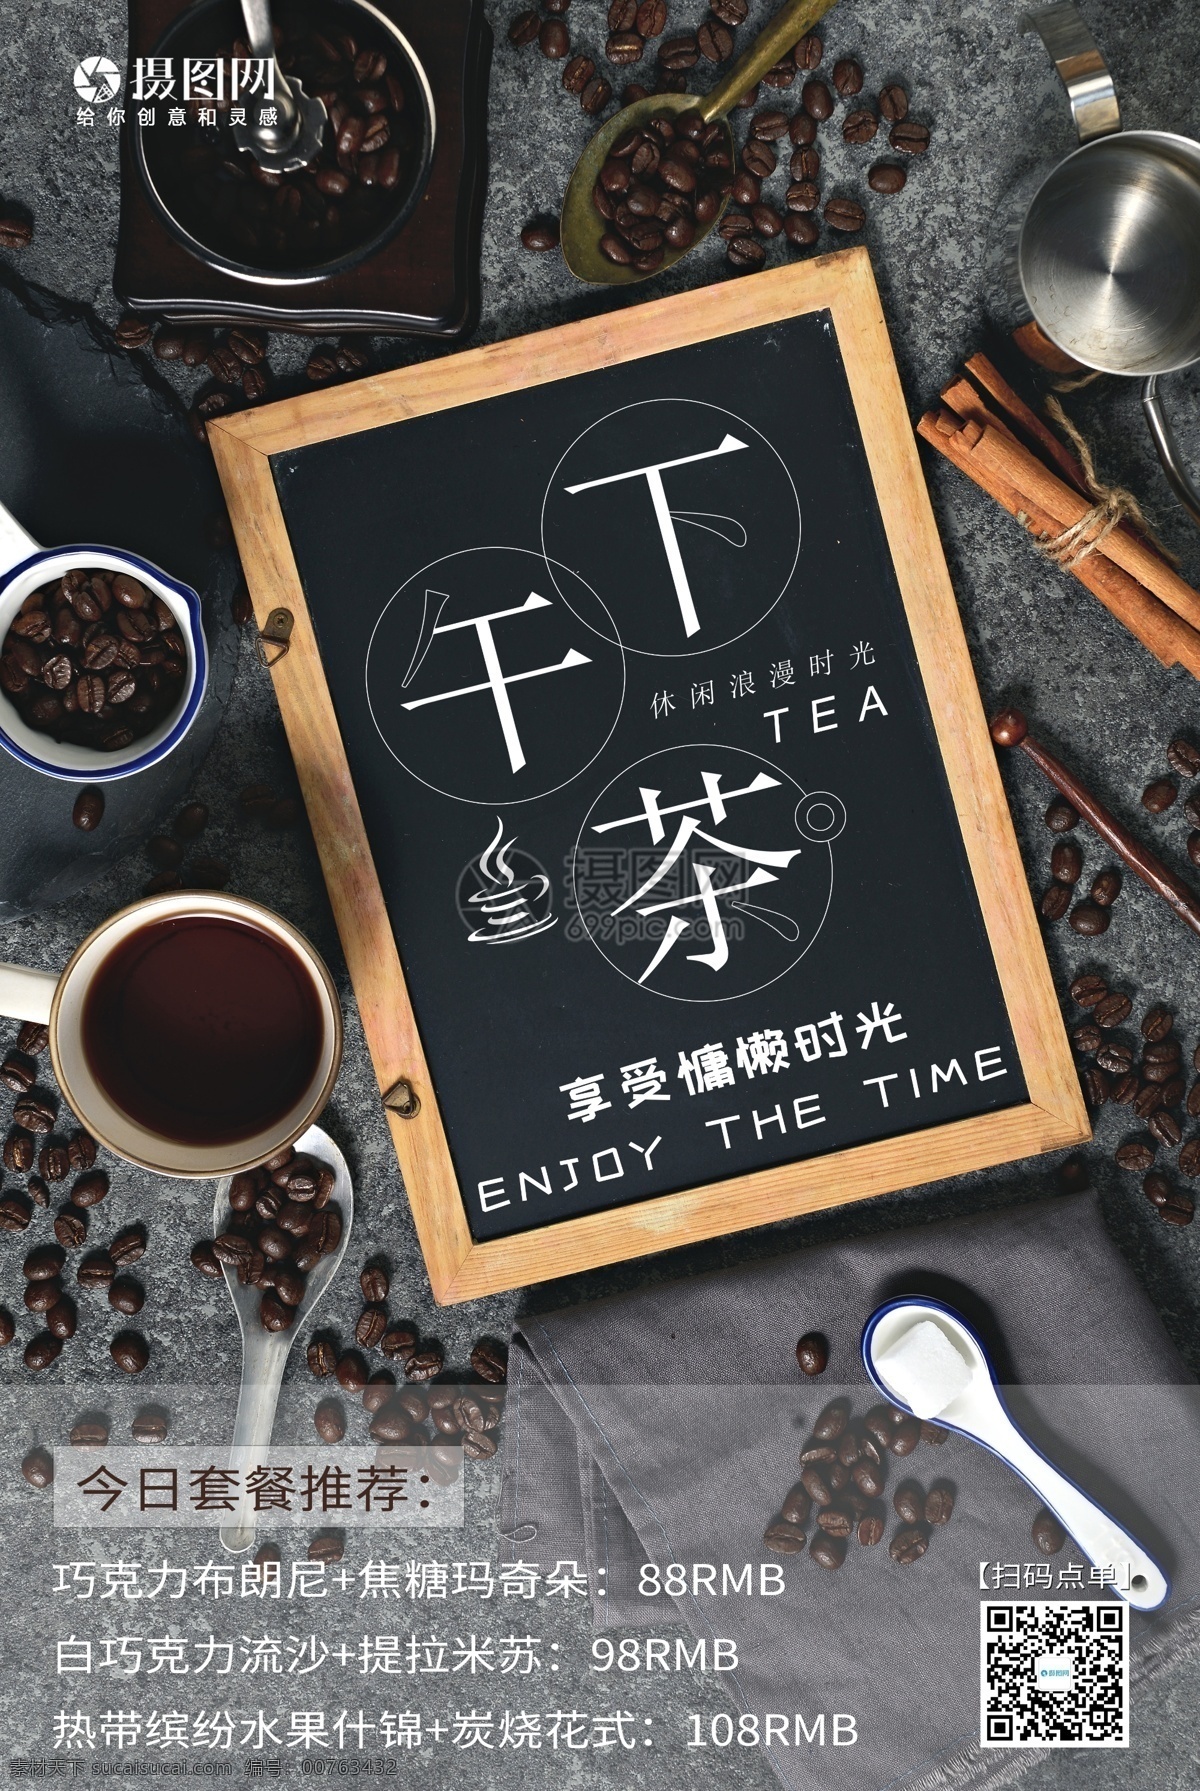 简约 下午 茶 促销 海报 下午茶 咖啡 点心 休闲时光 西点 促销海报 设计模板 咖啡豆 慵懒时光